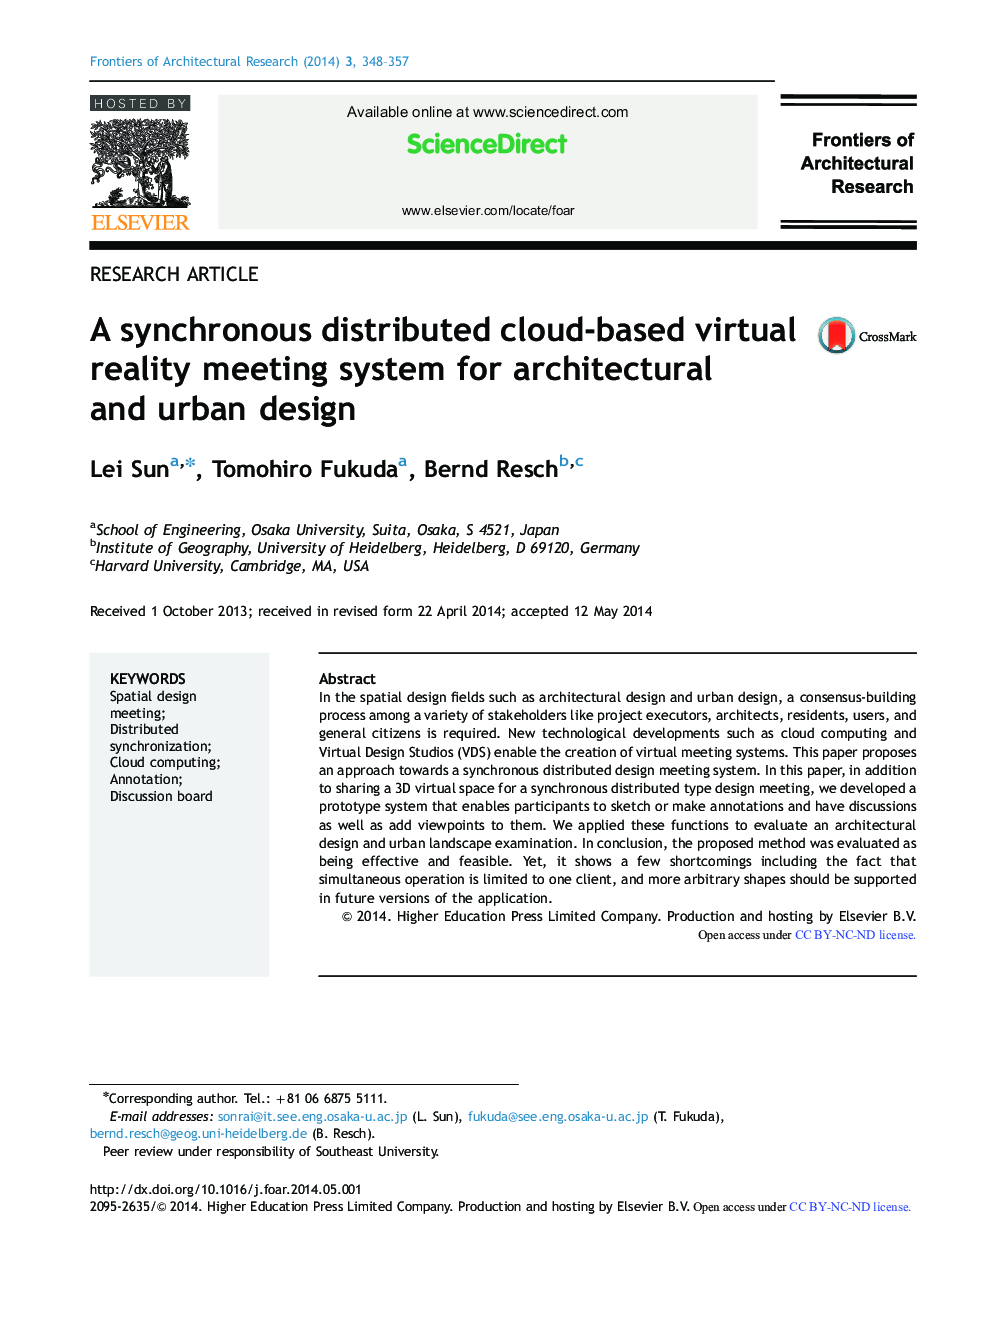 یک سیستم ملاقات مبتنی بر واقعیت مجازی مبتنی بر ابر همزمان برای طراحی معماری و شهری است 